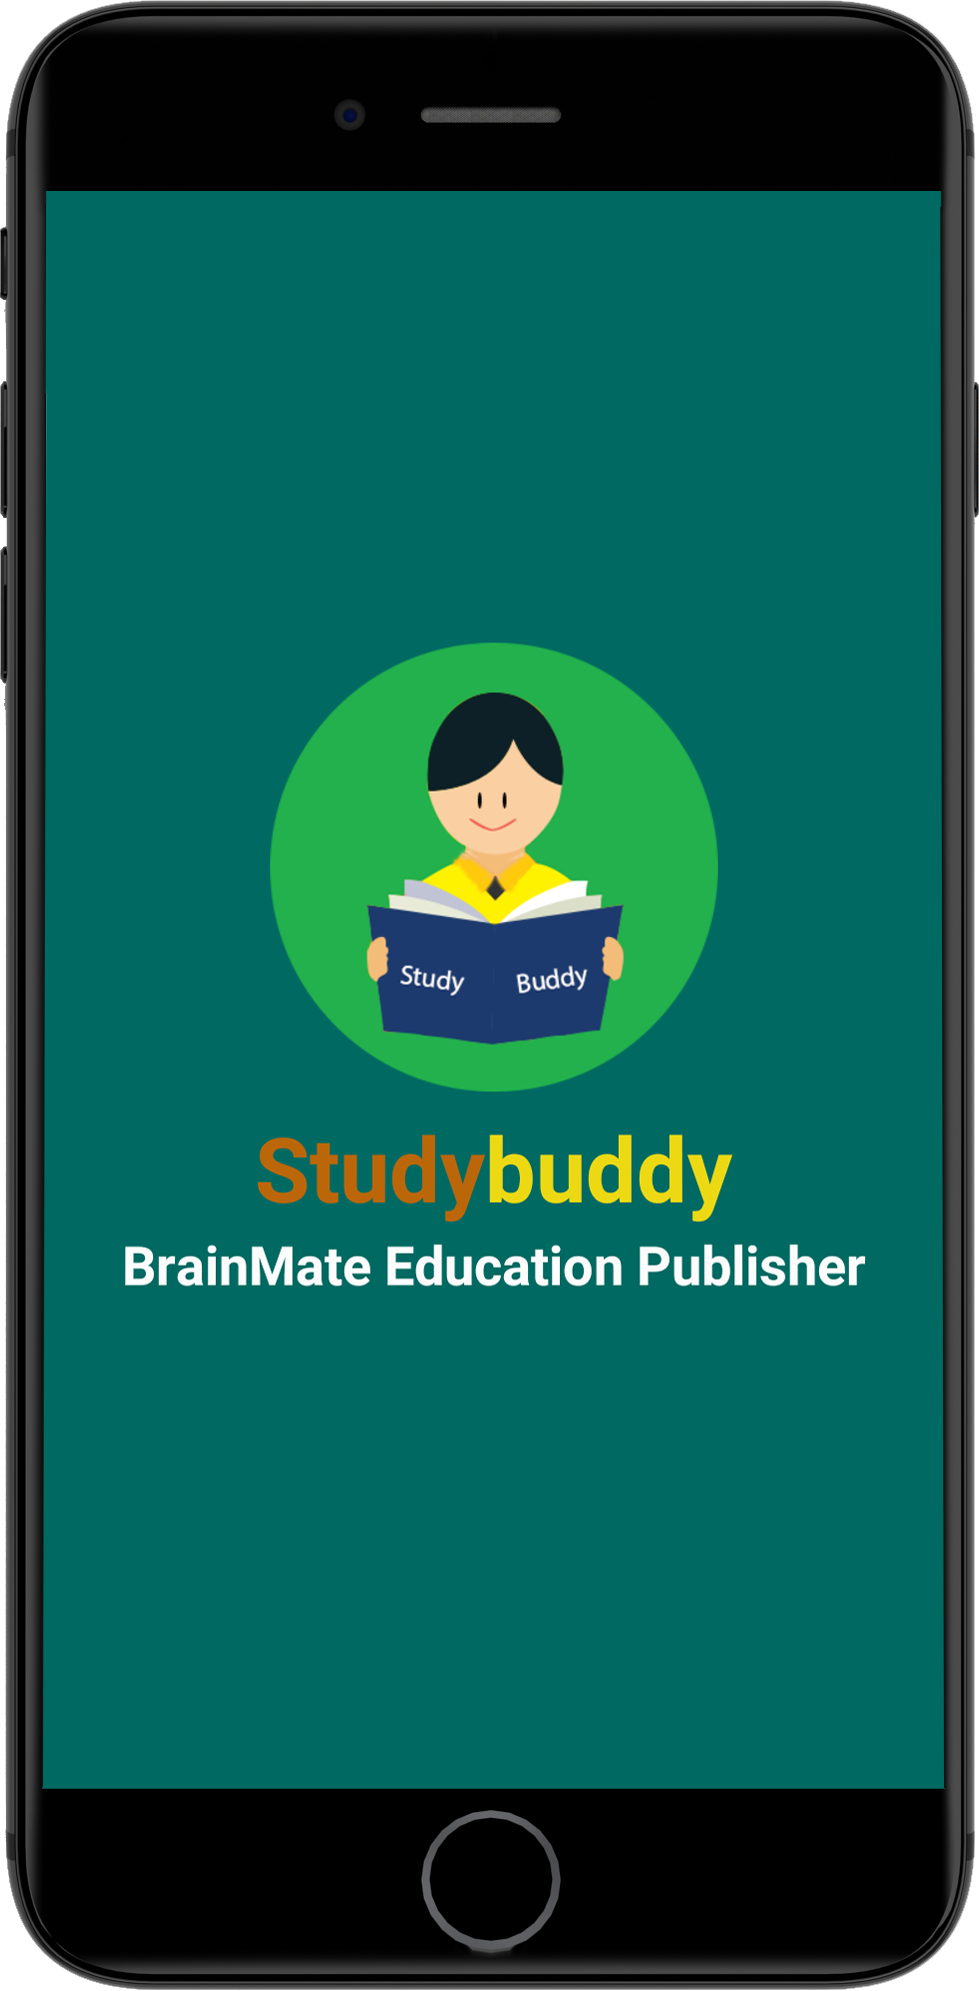 Studybuddy brainmate education publisher